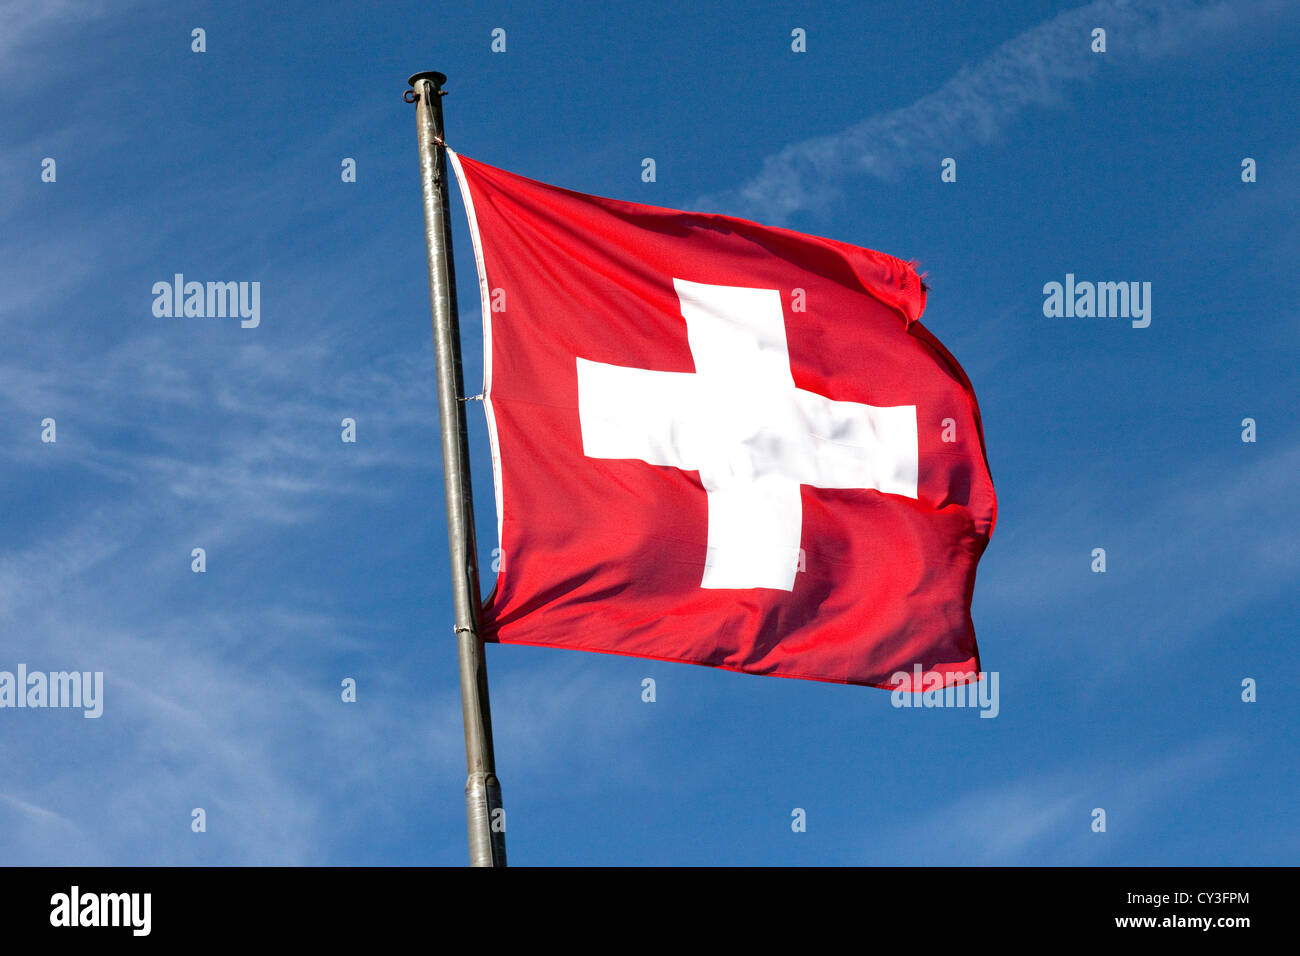 Schweizer Flagge der Schweiz auf einem blauen Himmel Stockfotografie - Alamy